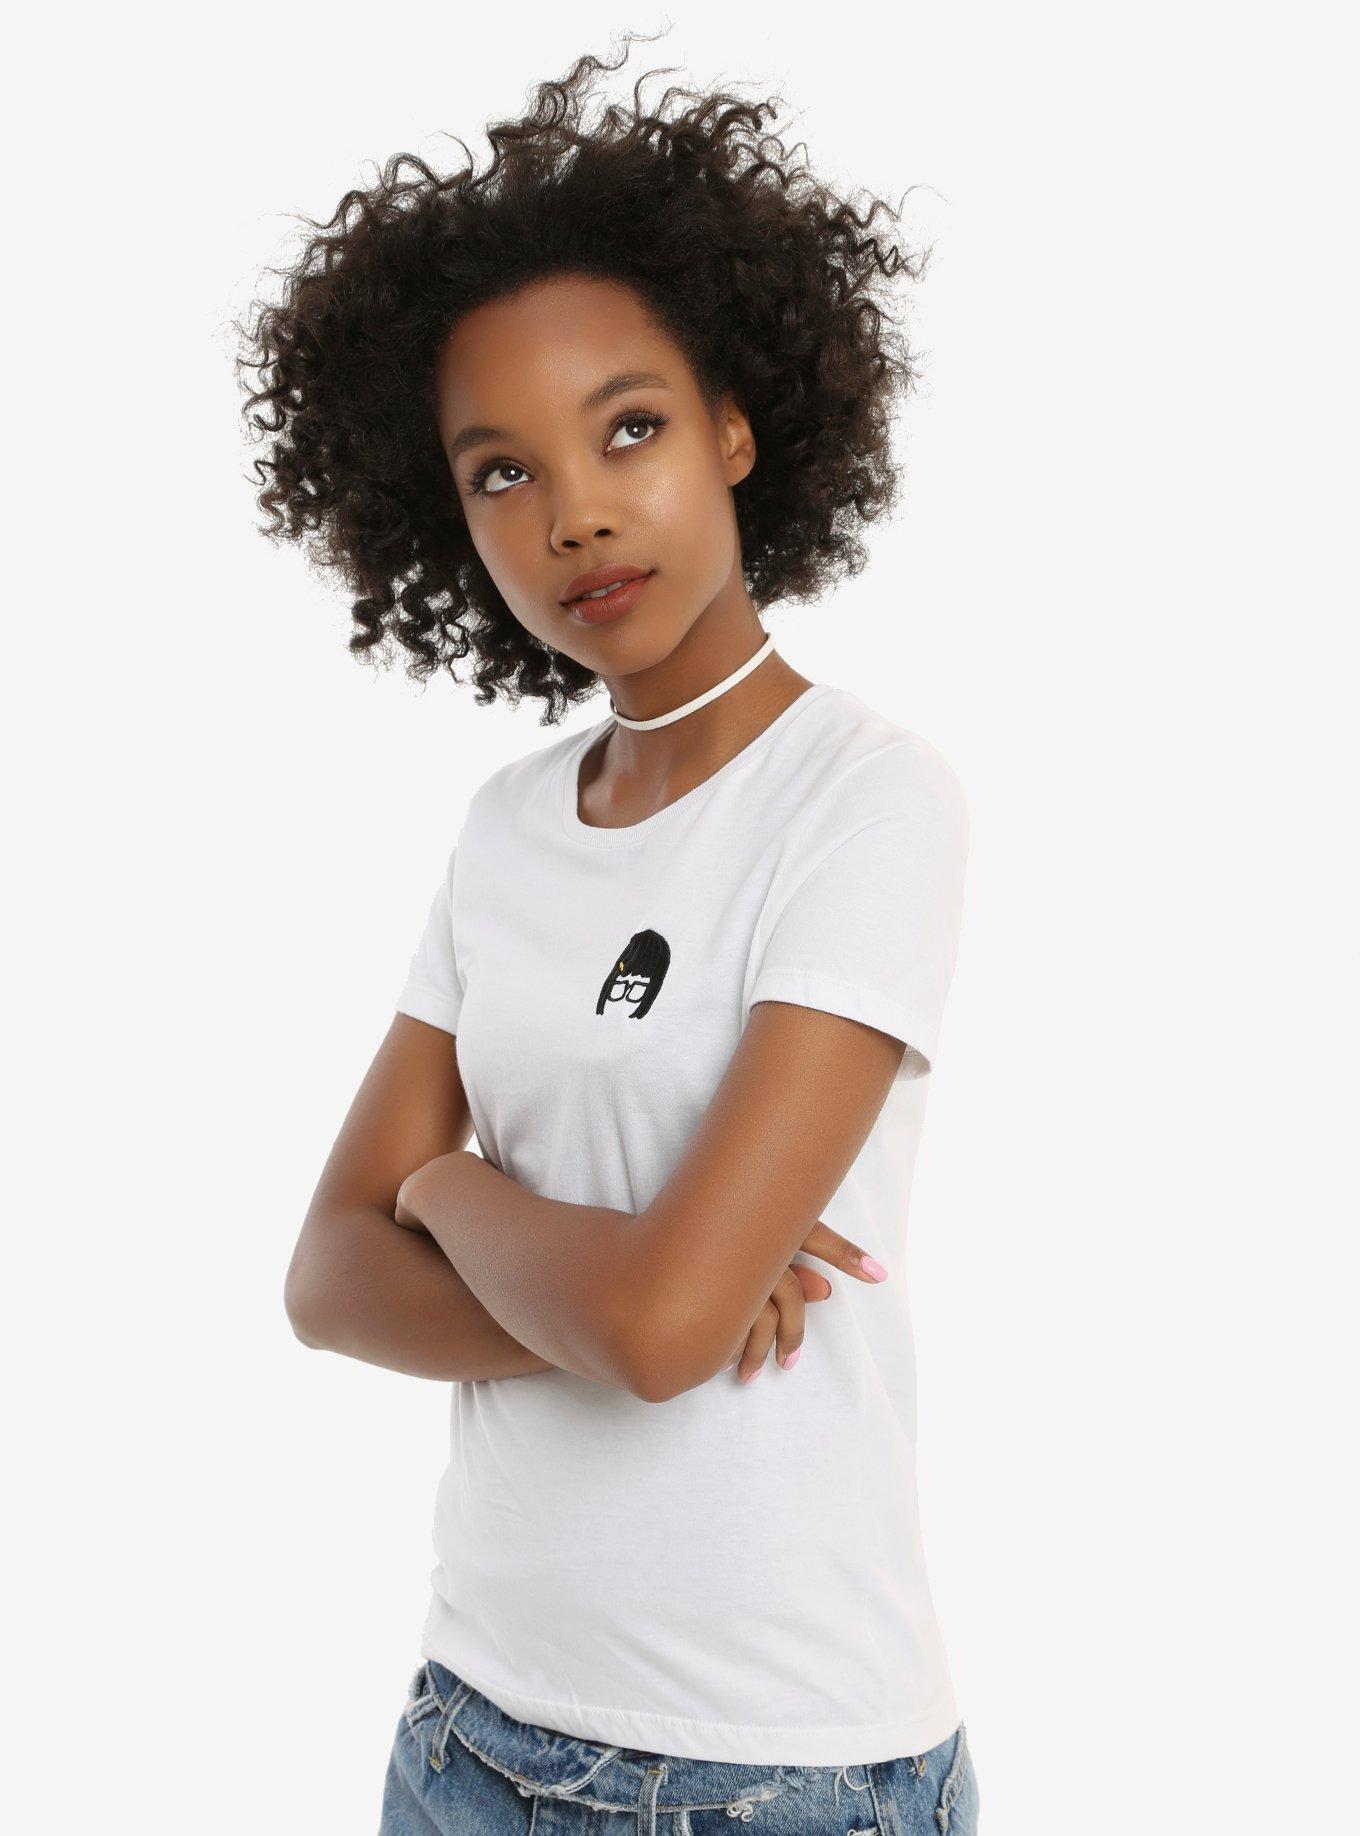 Bob's Burger Tina Smart Strong Sensual Woman Embroidered T-Shirt, WHITE, hi-res